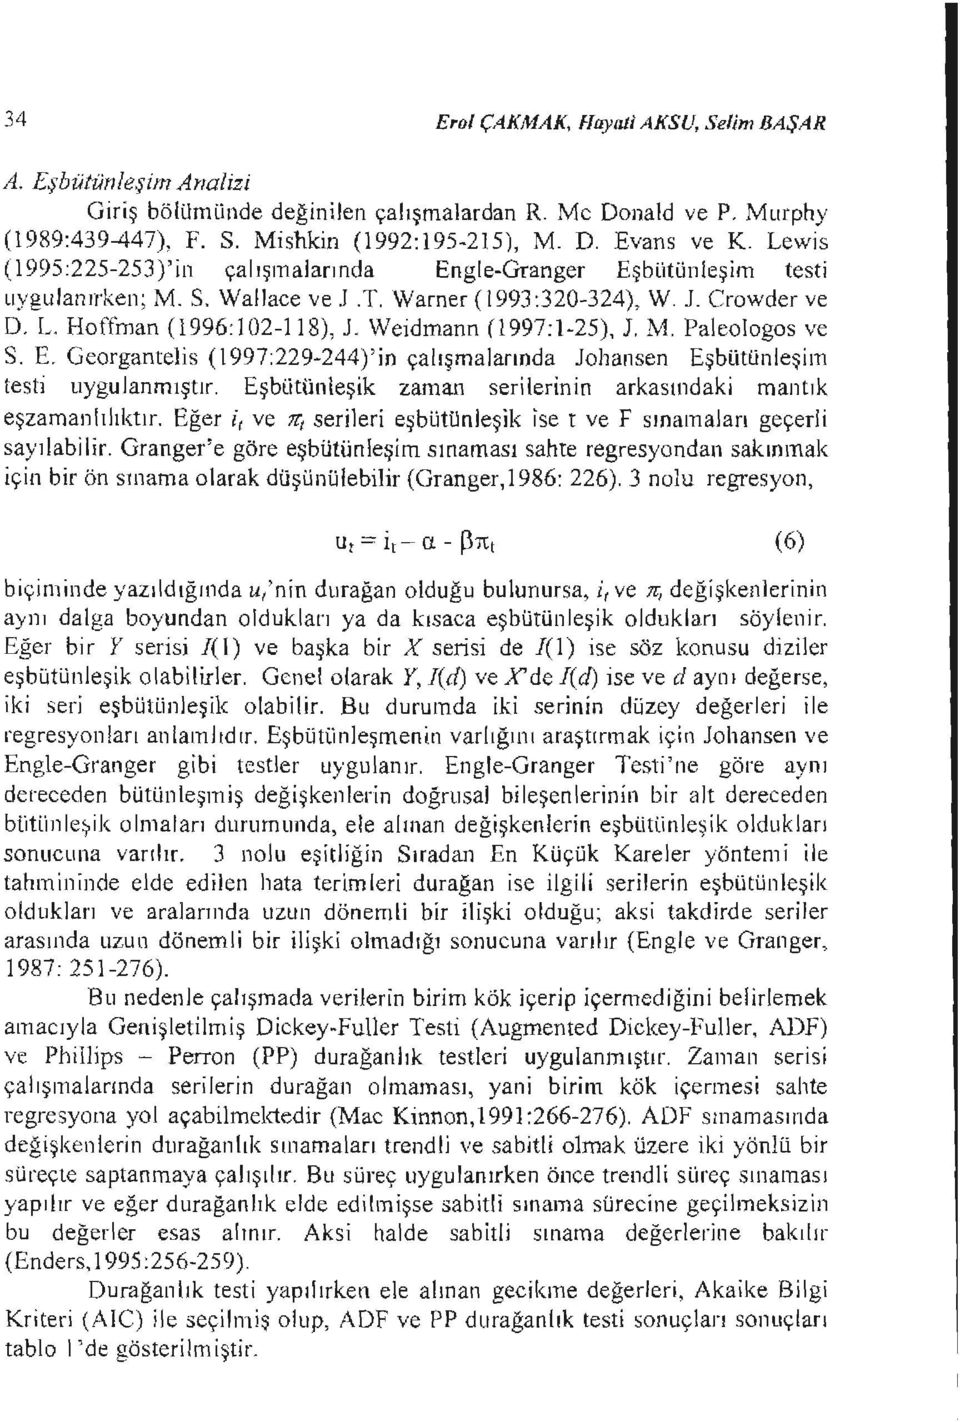 Weidmann (1997:1-25), J. M. Paleologos ve S. E. Georgantelis (1997:229-244)'in çalışmalarında Johansen Eşbi,jtünleşim testi uygulanmıştır.